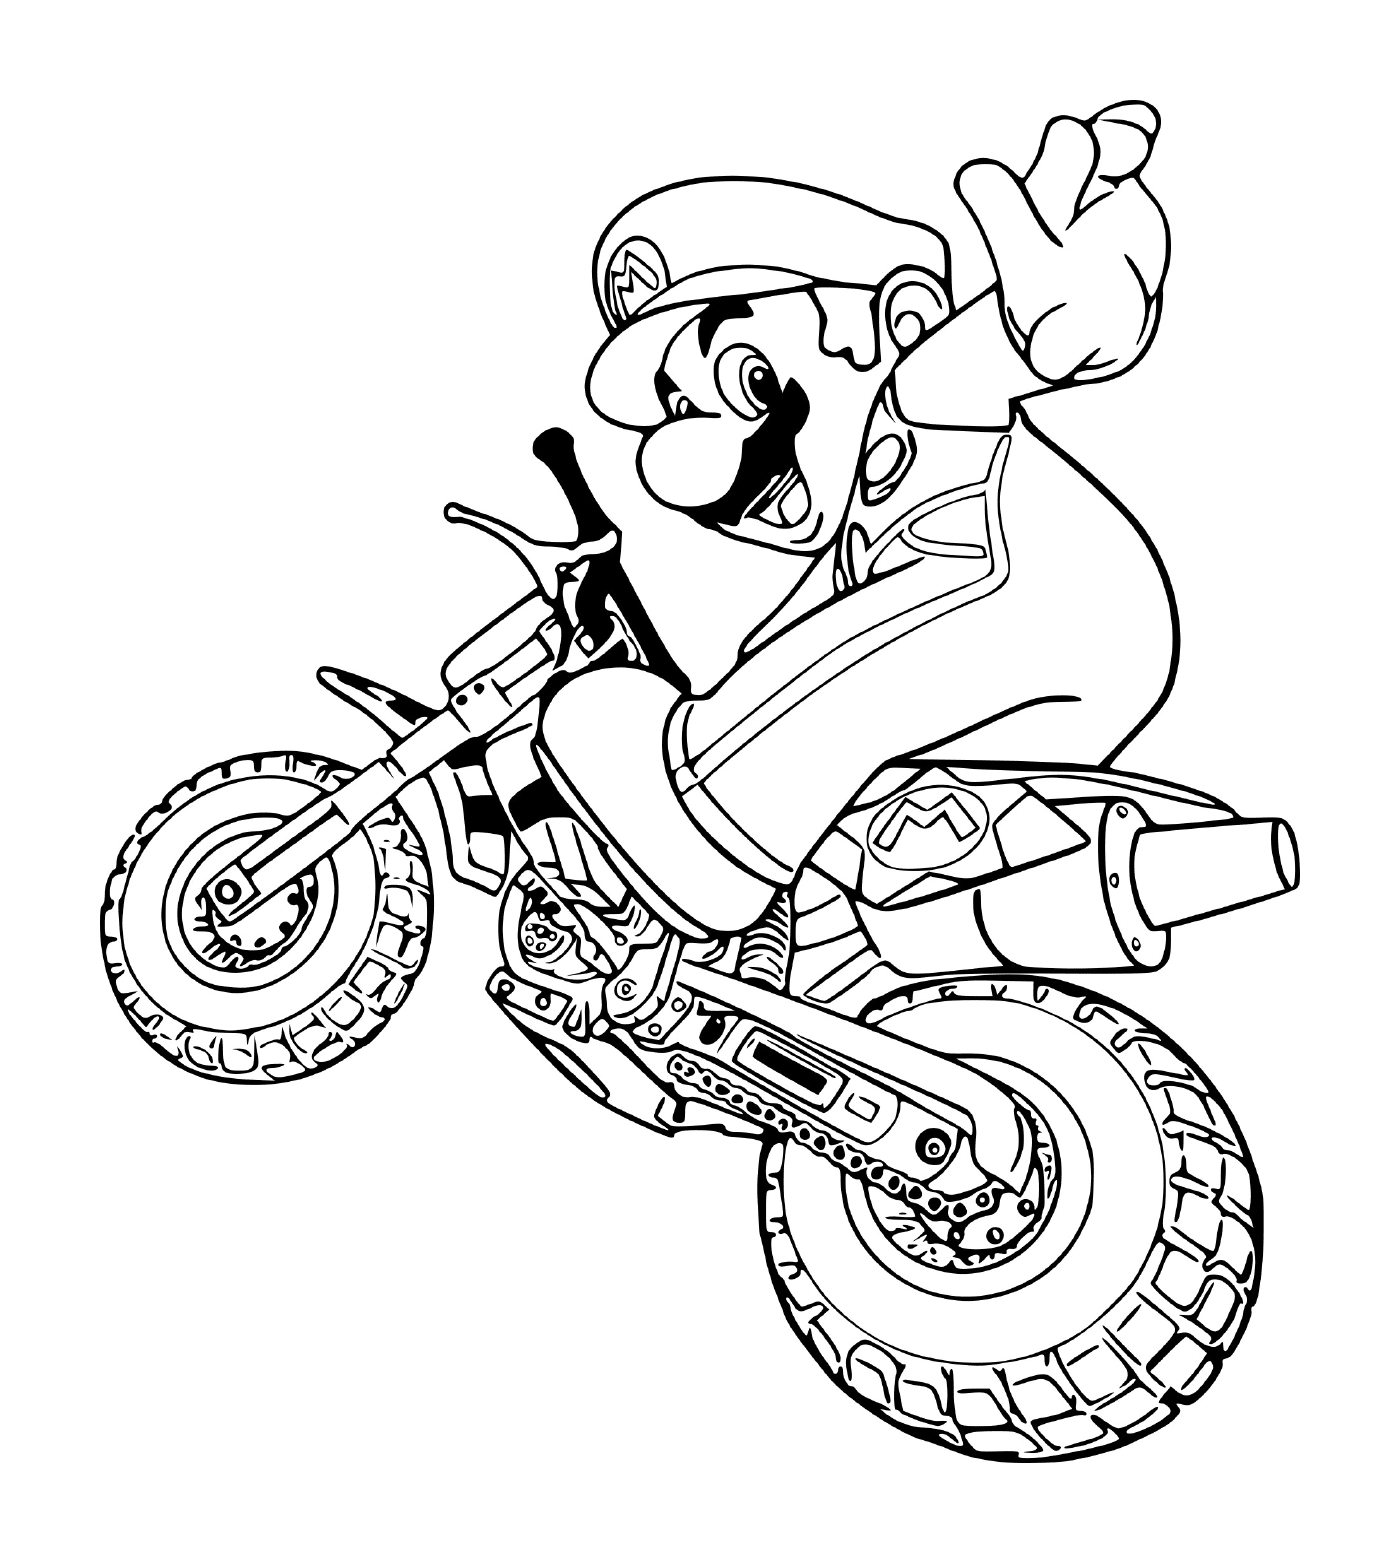   Mario en mode moto, sur une moto 